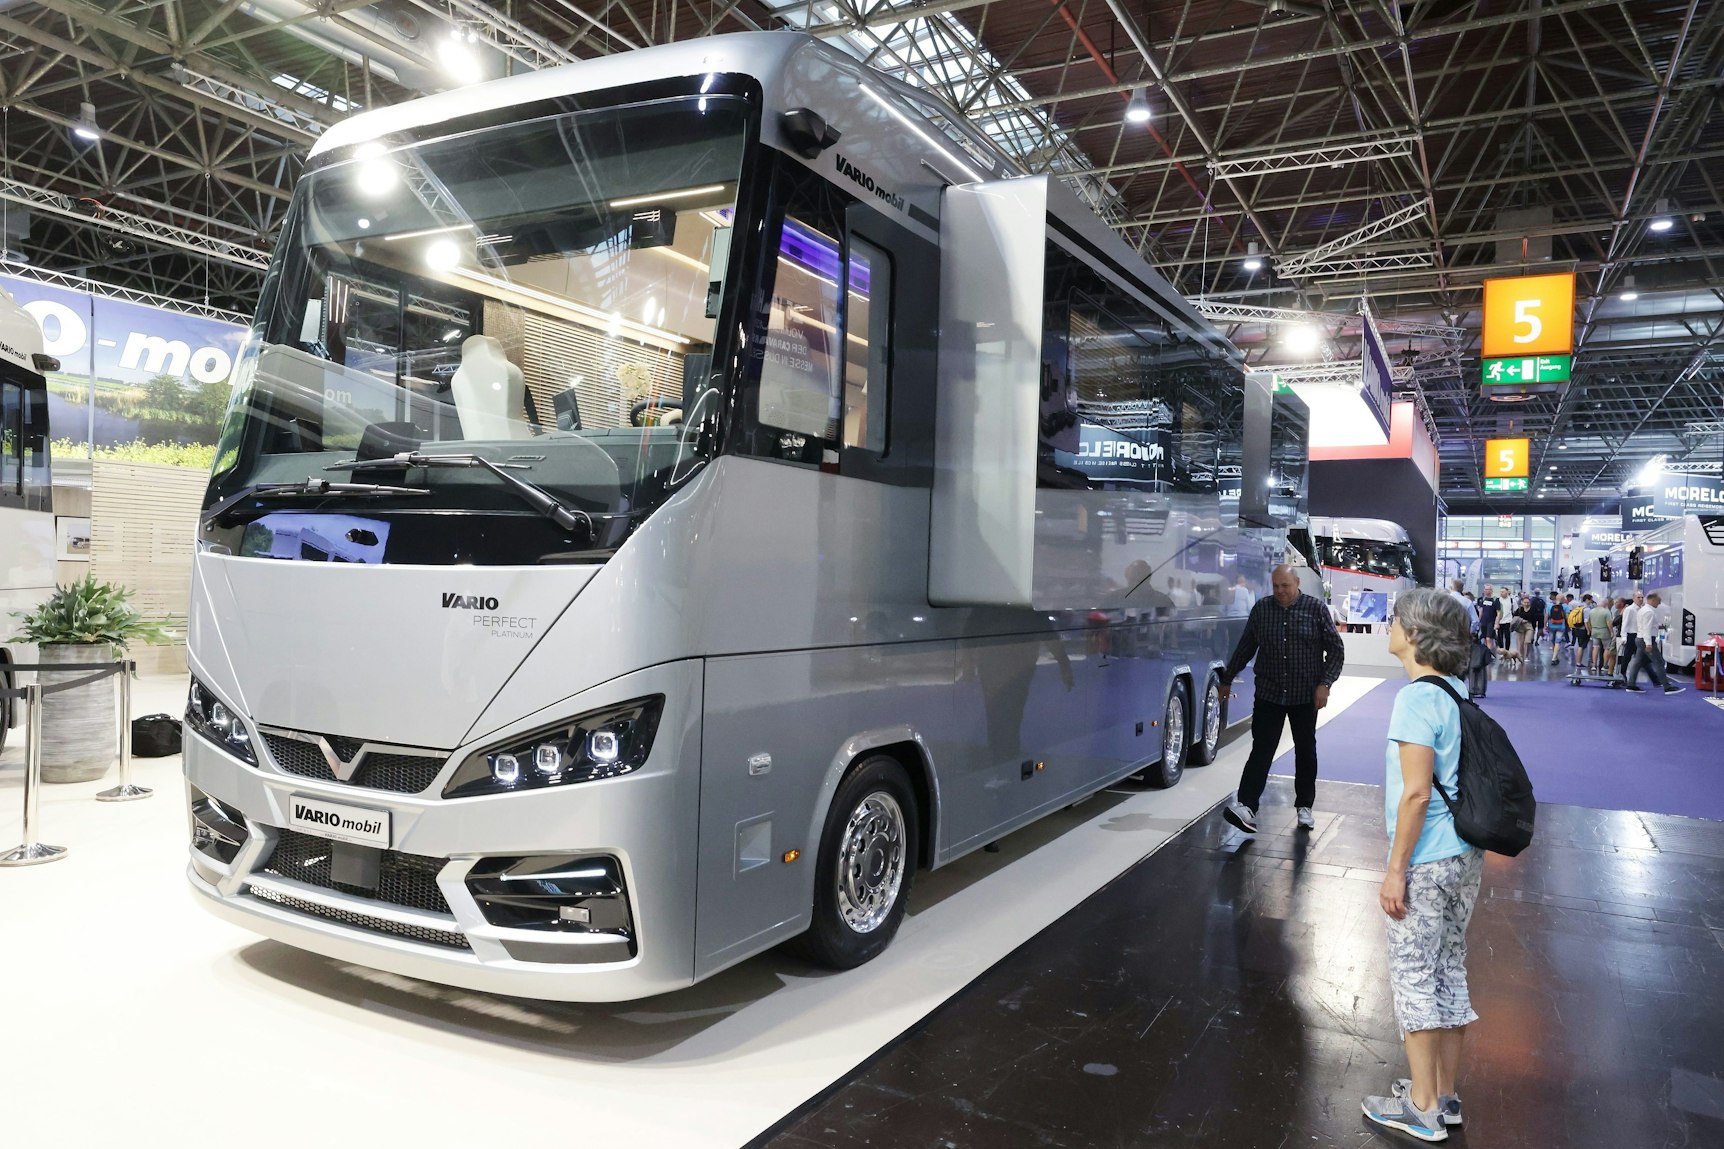 Düsseldorfer Caravan Salon: Luxusbus für 2 Mio. € haut einen um